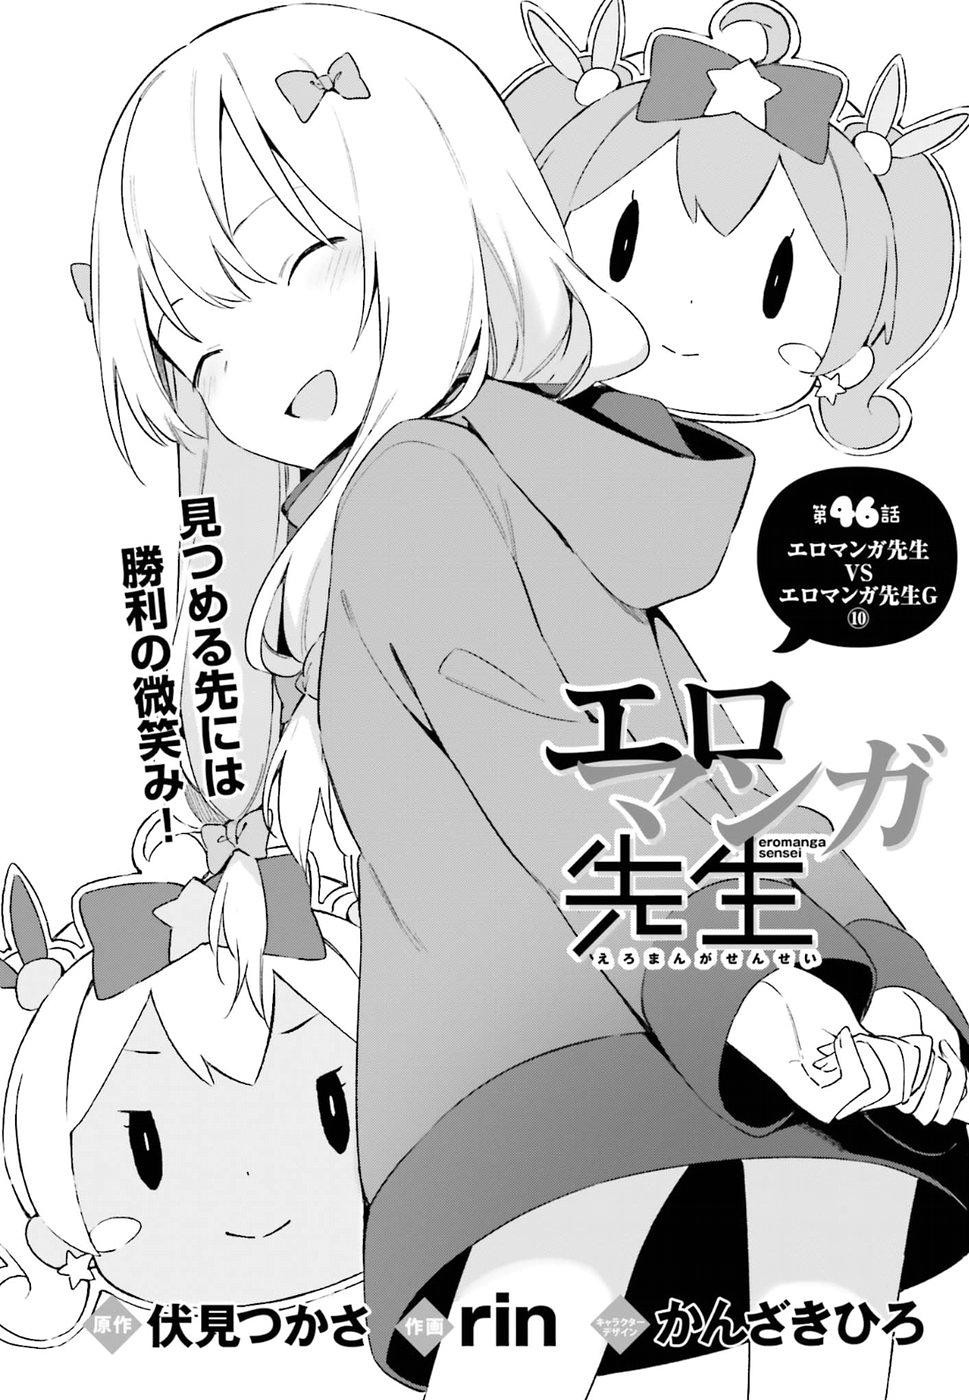 Ero Manga Sensei - Chapter 46 - Page 1